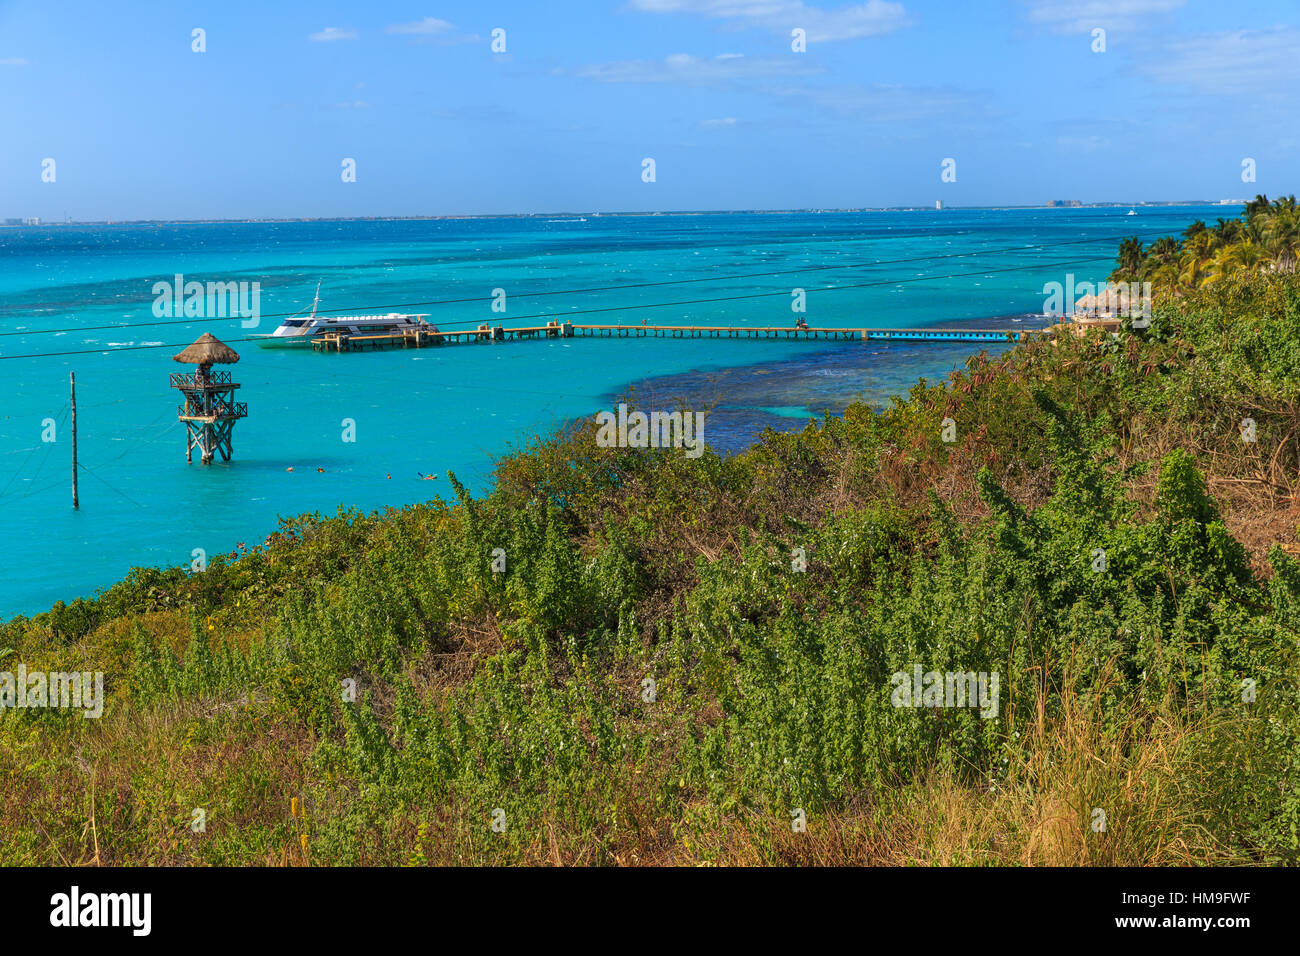 Ein Blick auf das schöne neben Wasser auf Isla Mujeres, Mexiko. Stockfoto